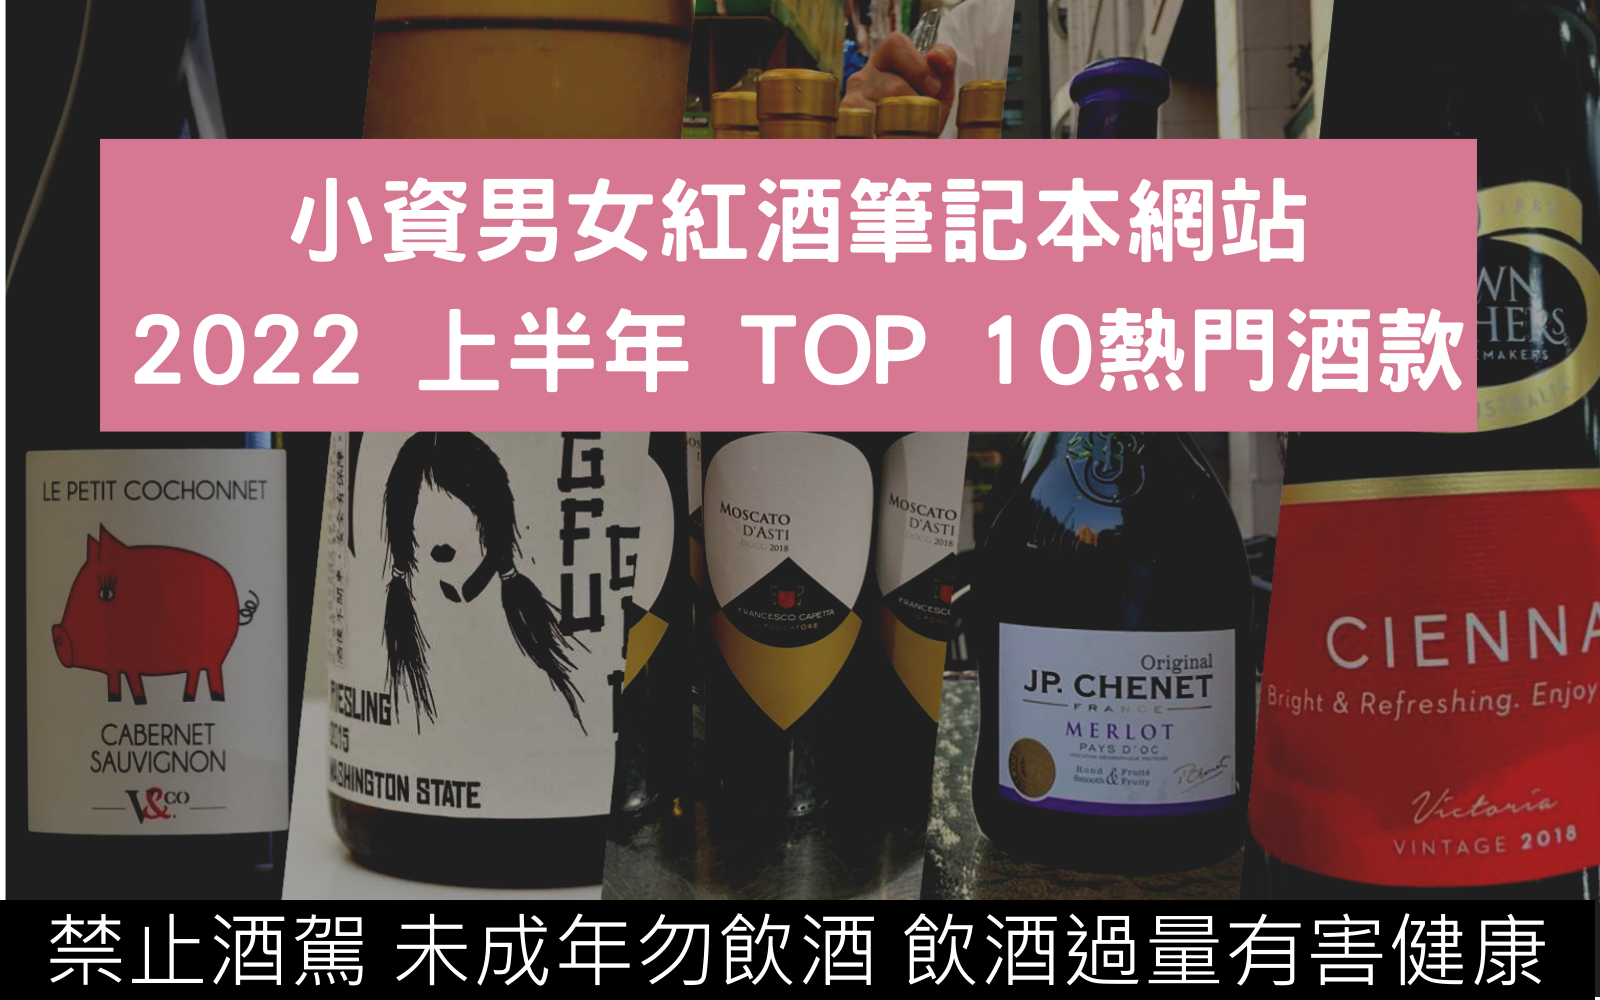 2022 上半年小資男女紅酒筆記本網站App熱門酒款TOP 10